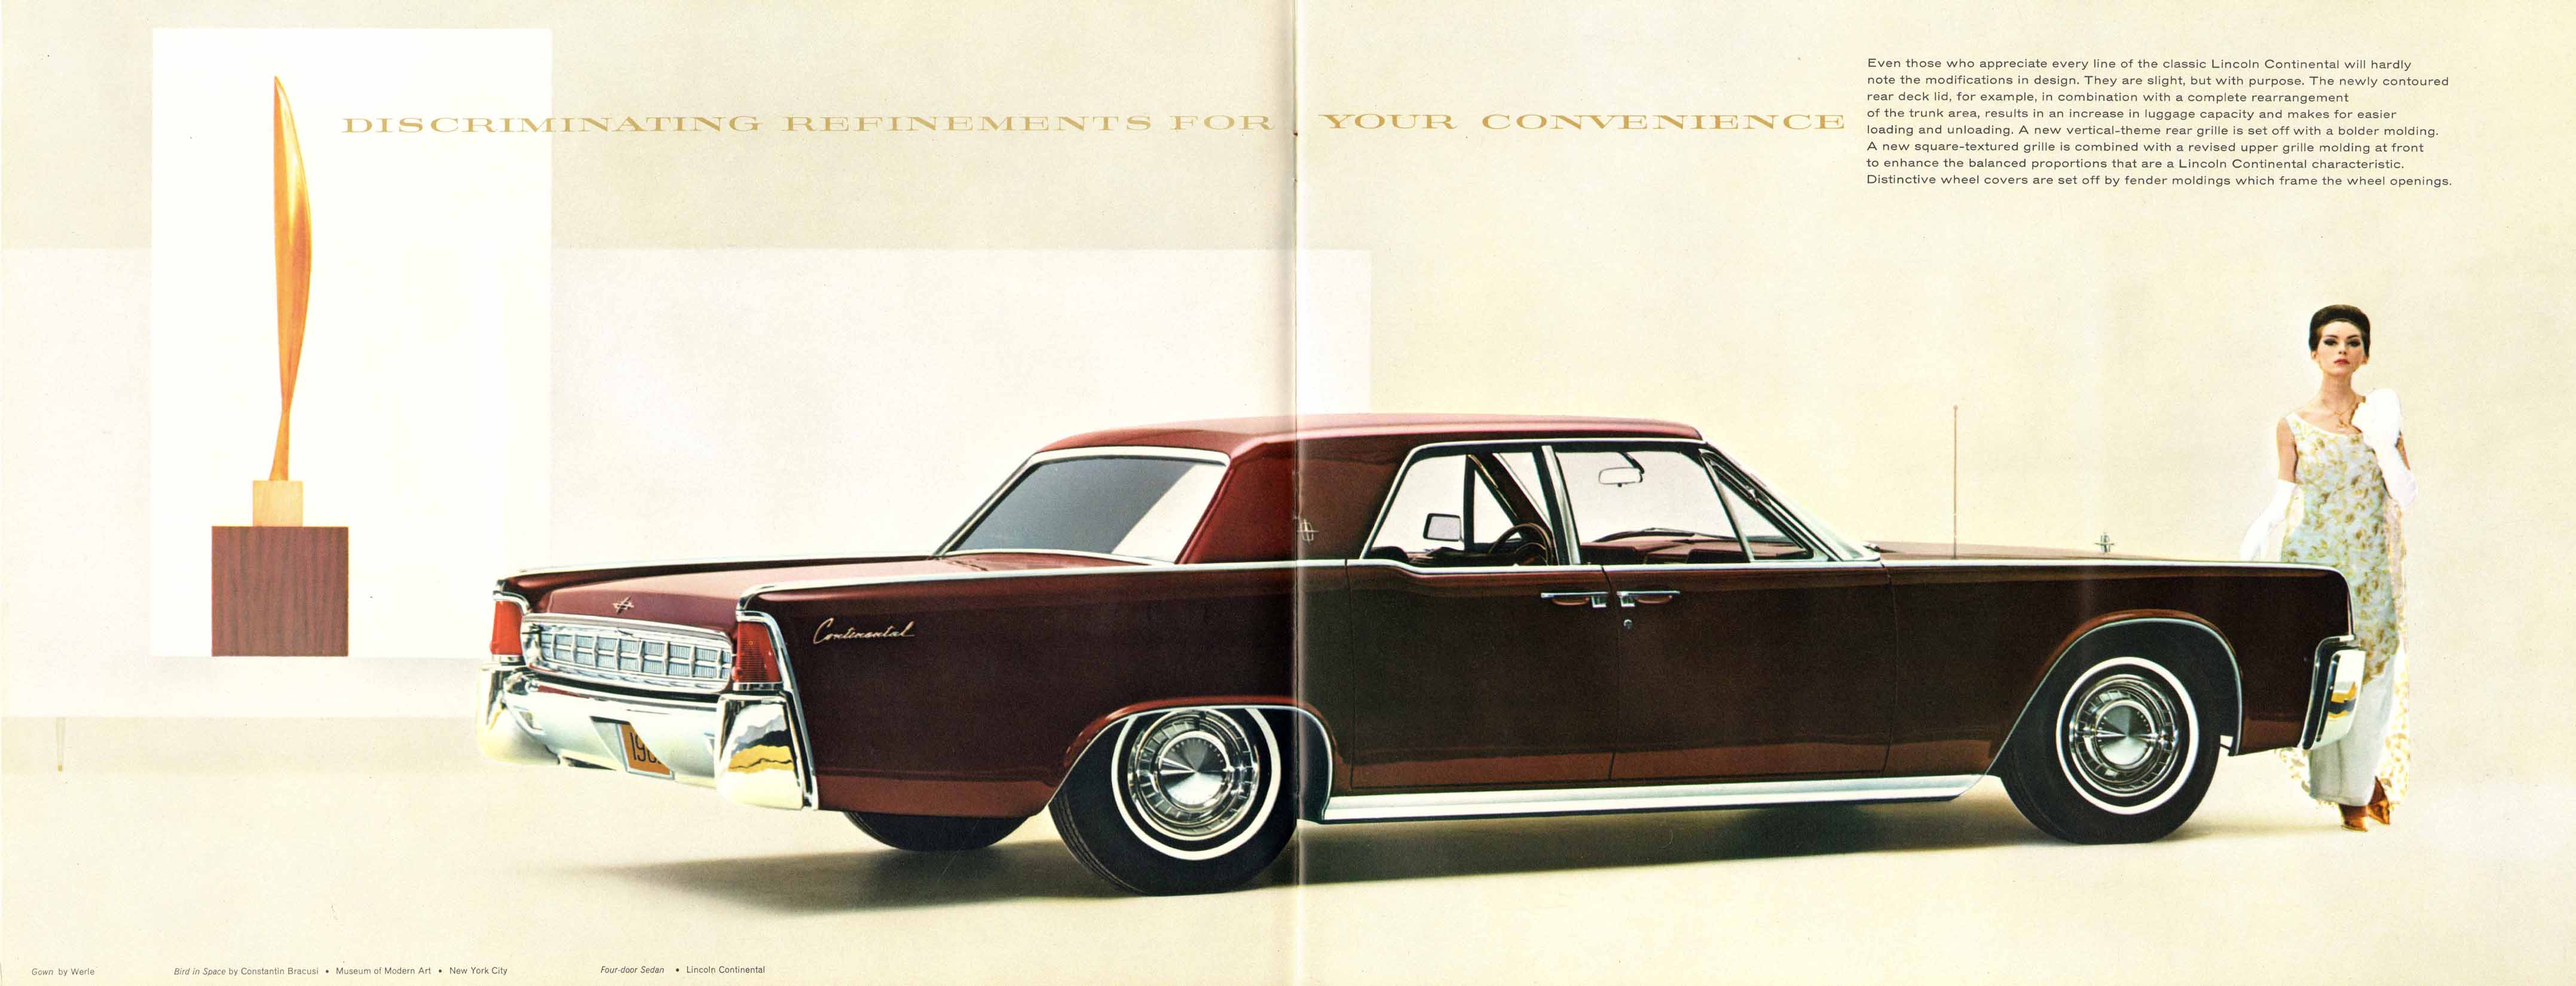 1963_Lincoln_Continental_Prestige-04-05